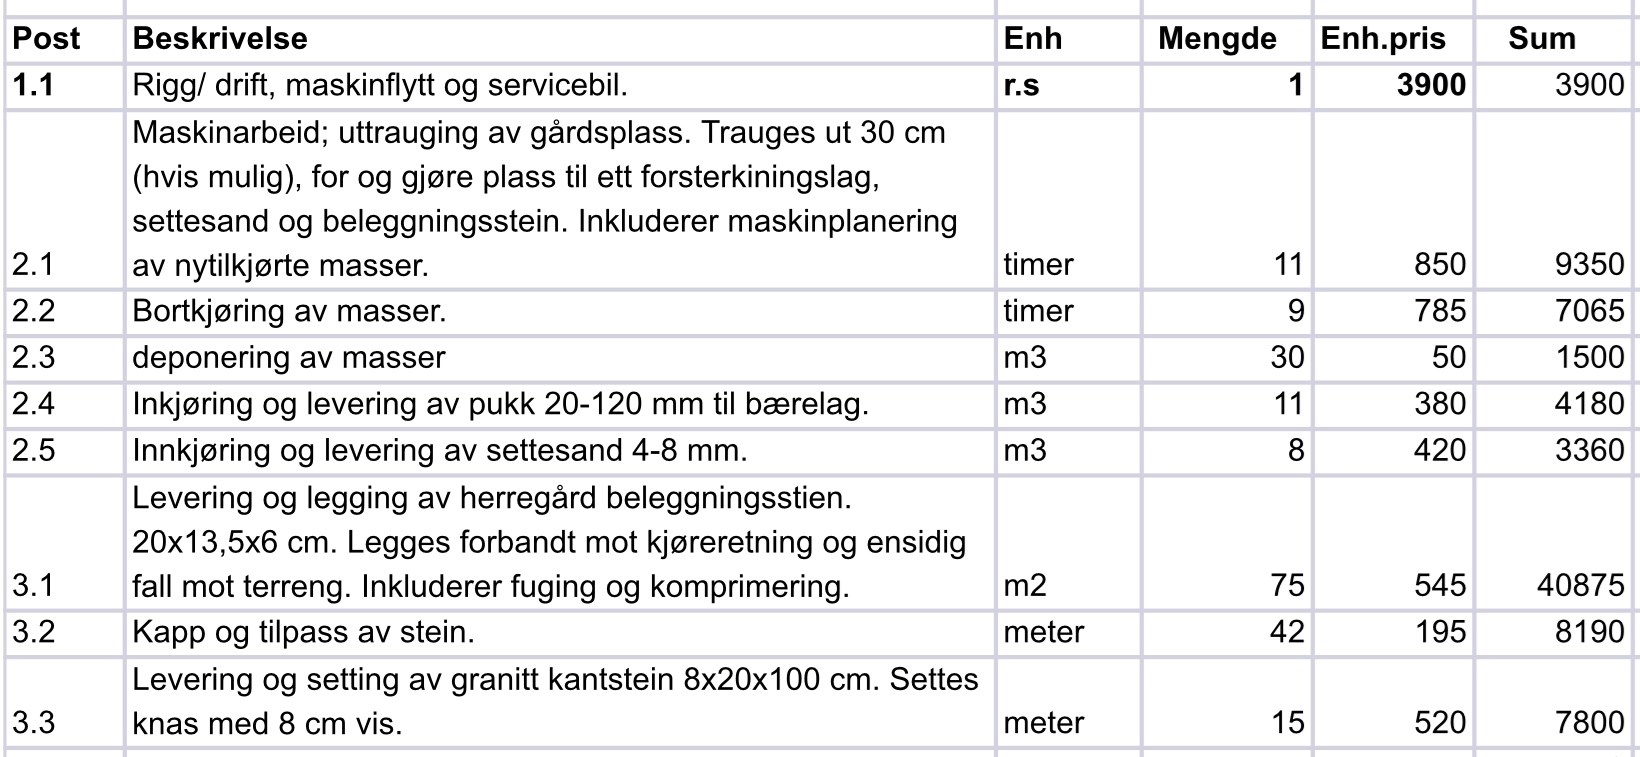 Pristilbud for legging av belegningsstein på 75 m2 gårdsplass - Trøndelag - 0CB7DB10-383A-4DE4-ABC4-0C64BDFB0723.jpeg - Morty1